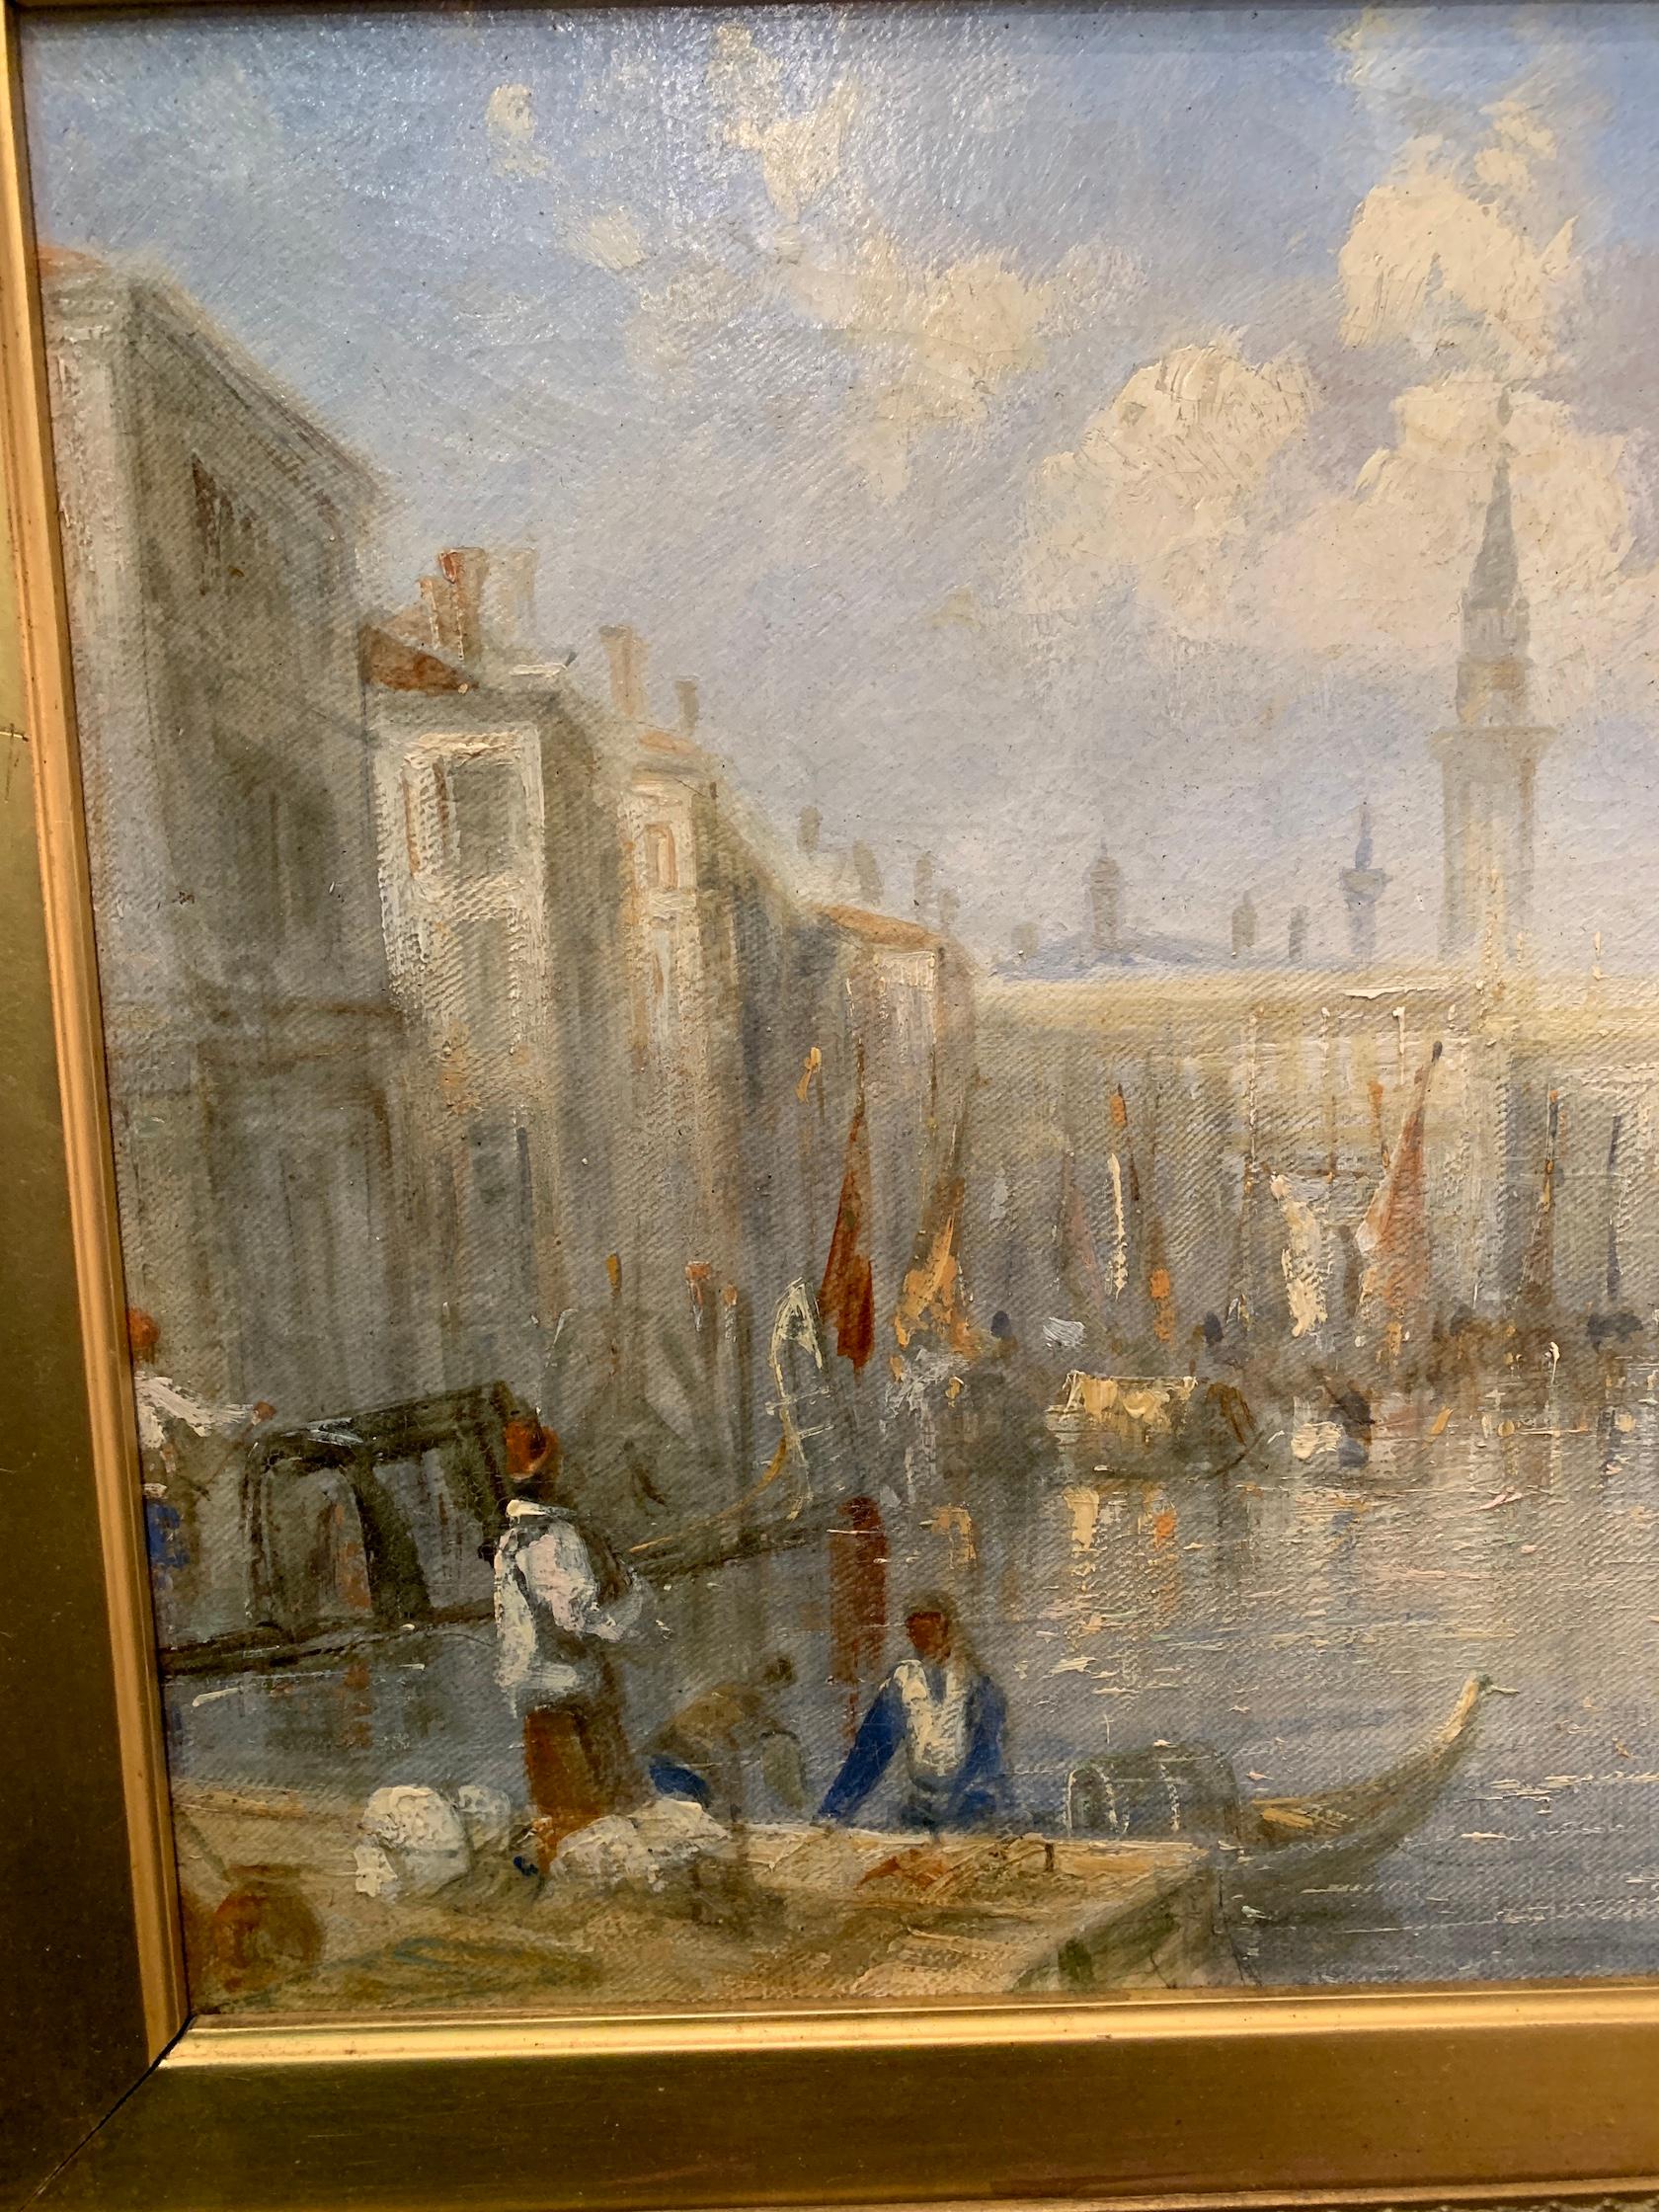 Francis Moltino (1818-1888) était un peintre paysagiste anglais du XIXe siècle. La plupart des récits biographiques indiquent qu'il est né à Milan, en Italie, ce qui est inexact. Francis Moltino est en fait né Frank George Owen Moulton dans le